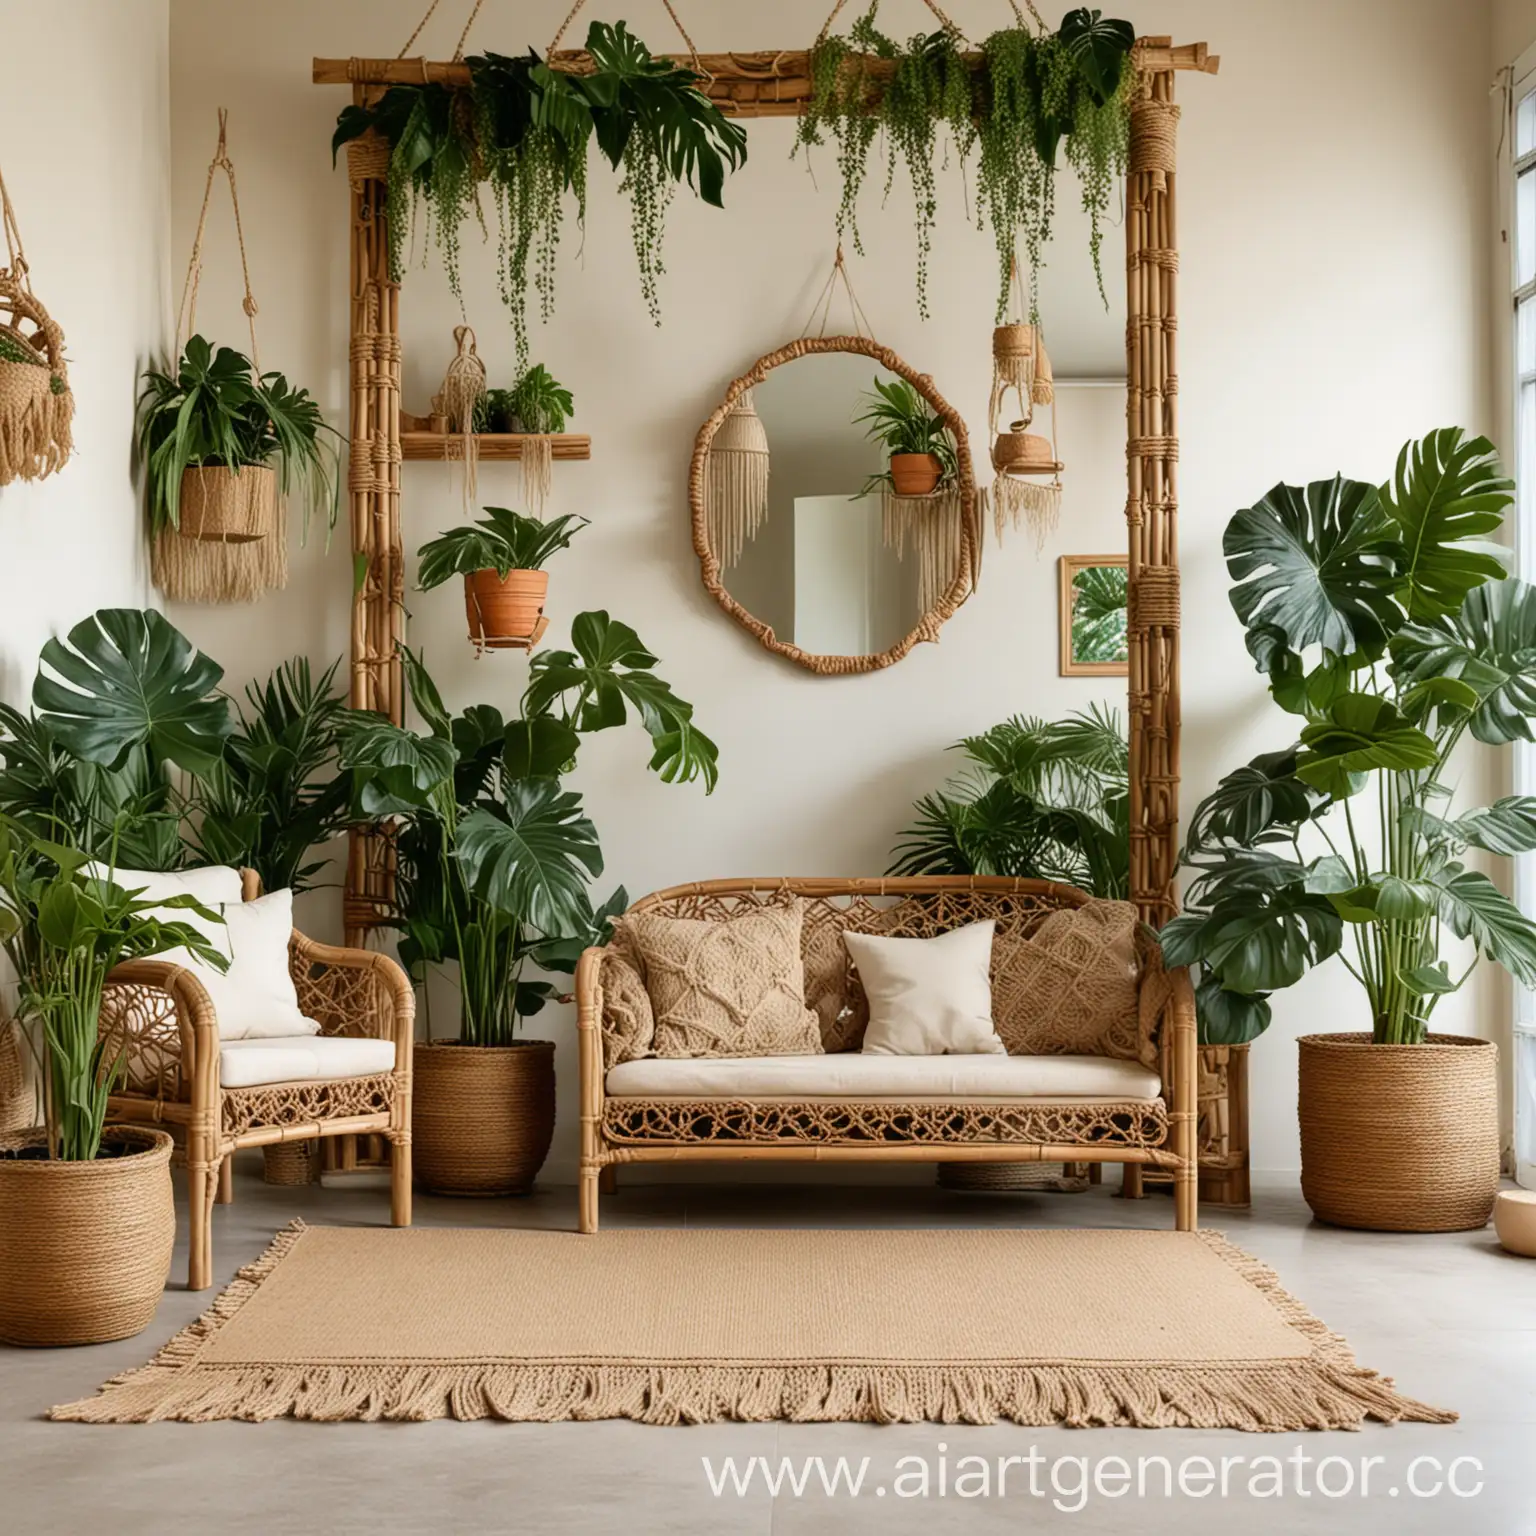 Большая комната с тропическим интерьером на стене зеркало в деревянное раме, плетеная мебель, тканые бежевые коврики, макраме декор, на полу горшок с монстерой, подвесные кашпо с лианами